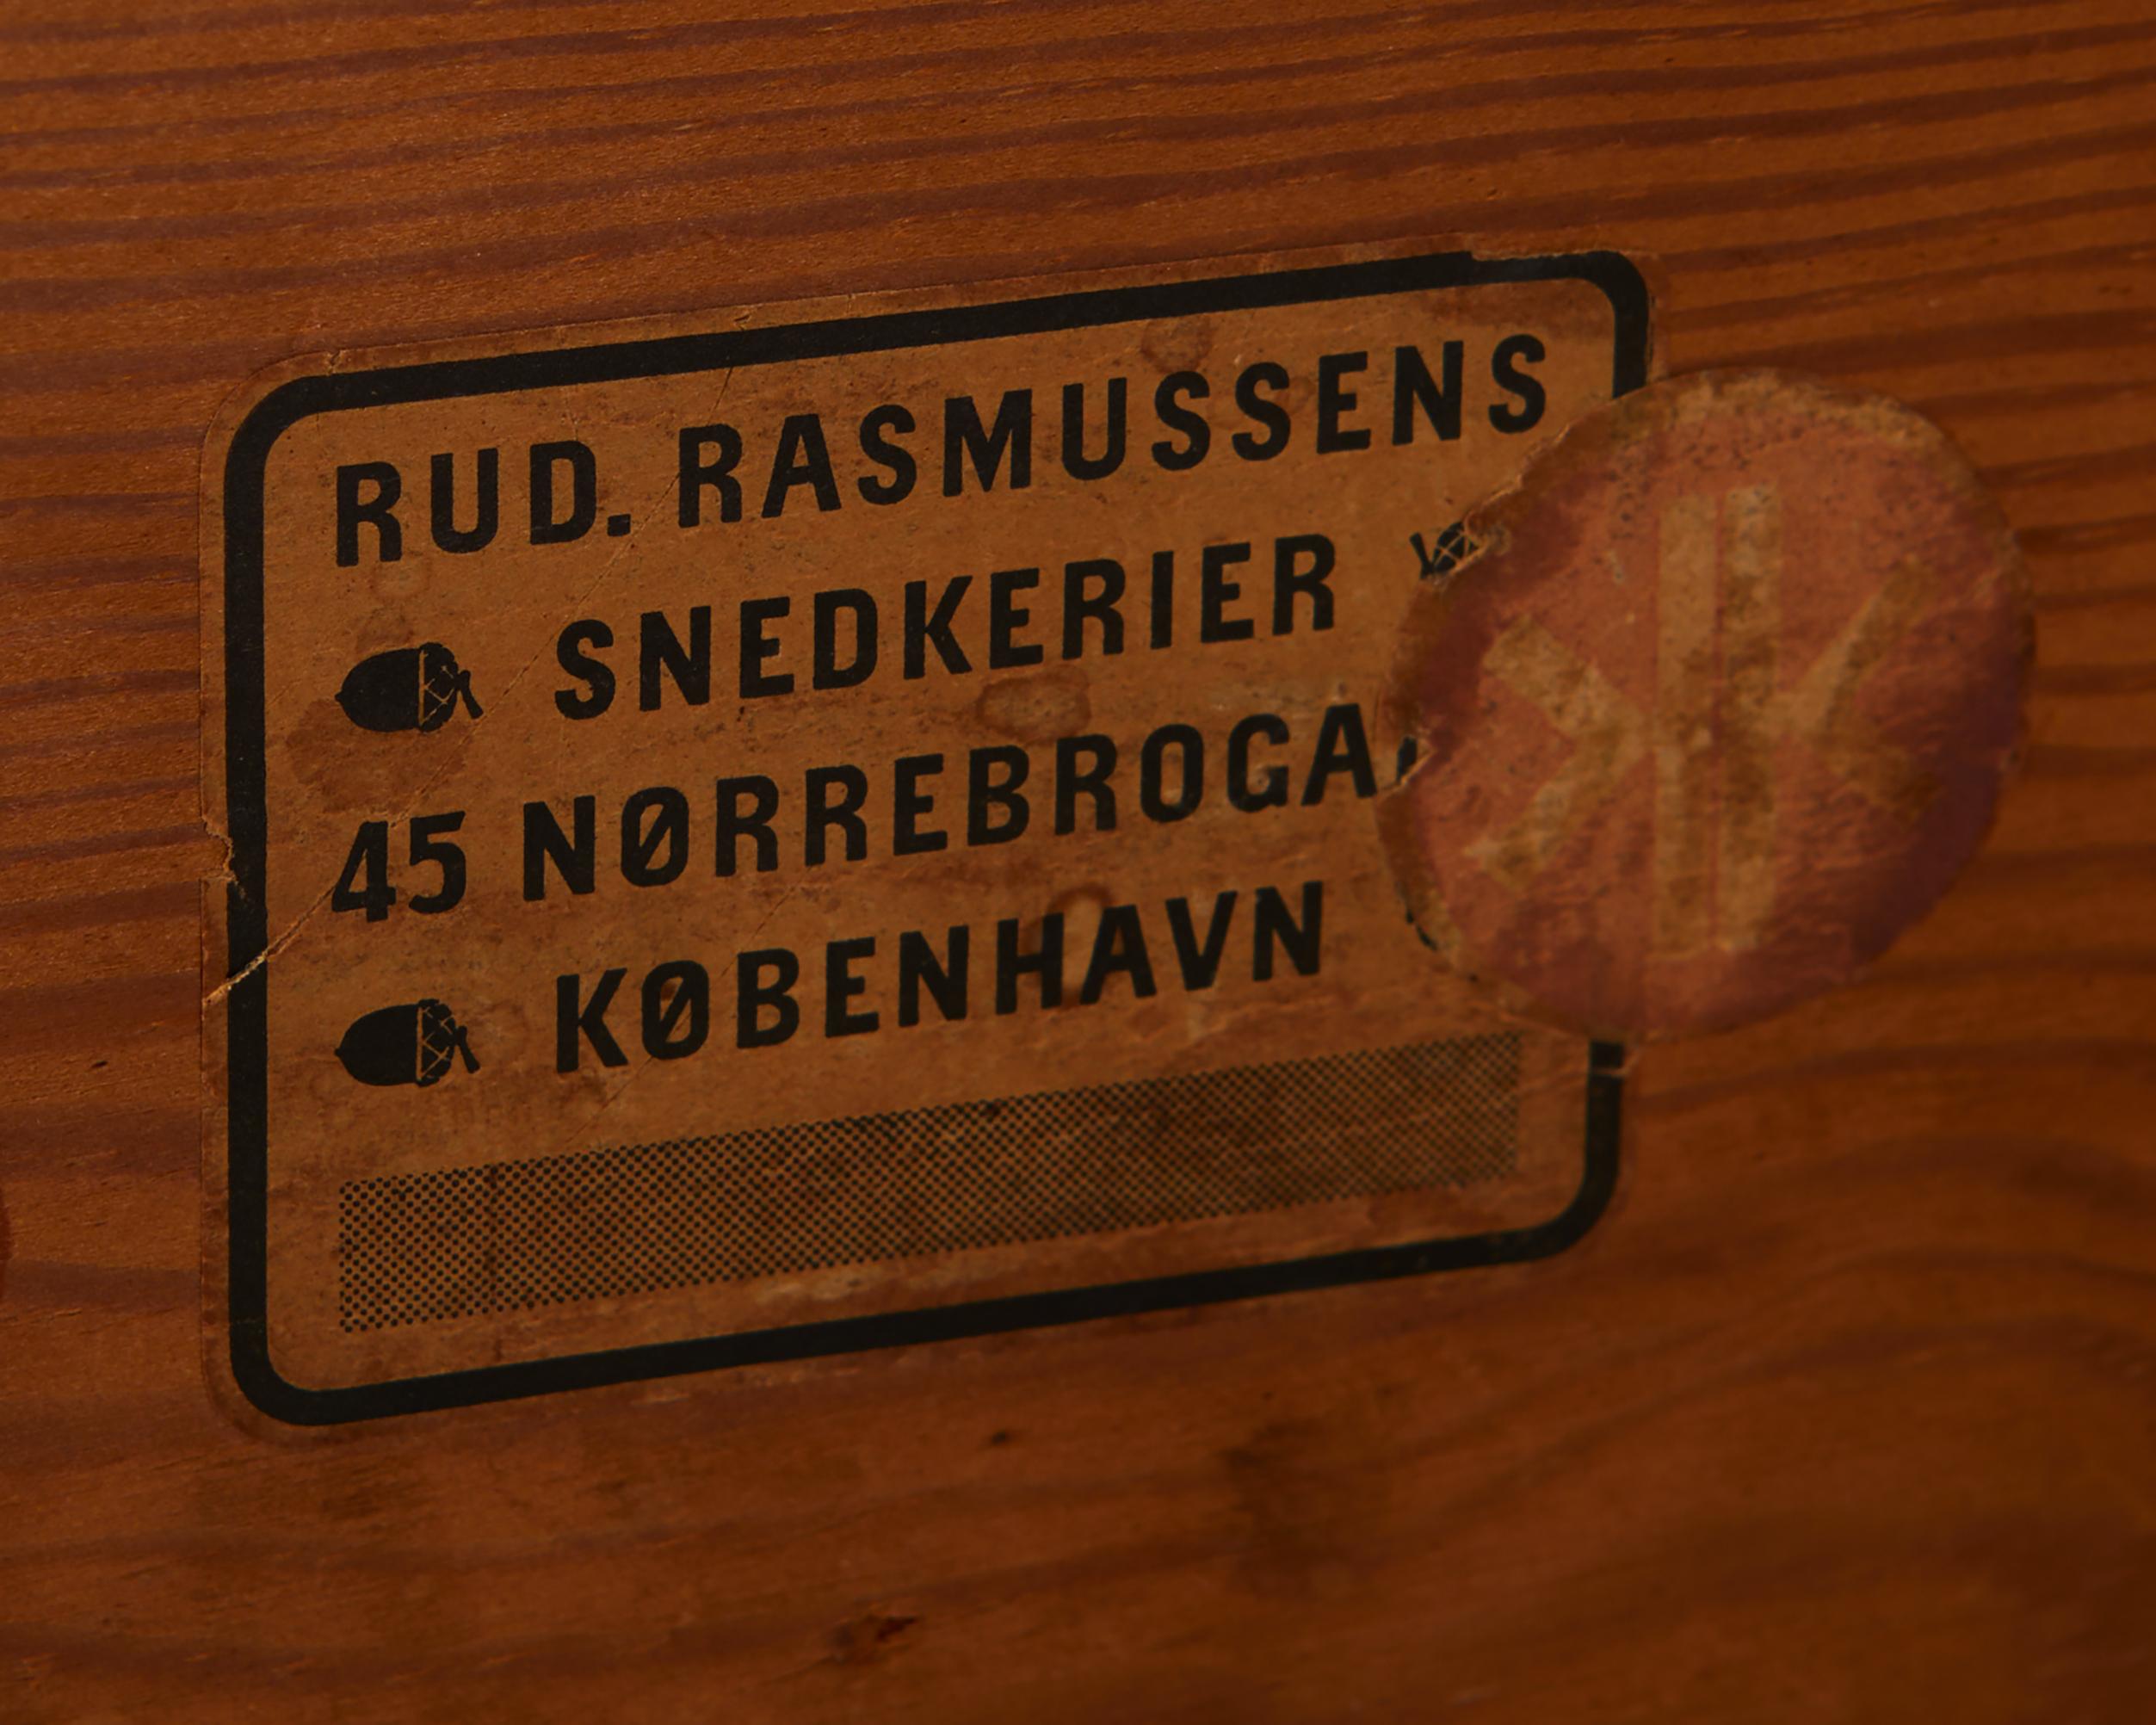 Esstisch entworfen von Kaare Klint für Rud, Rasmussen, Dänemark, 1930er Jahre 3